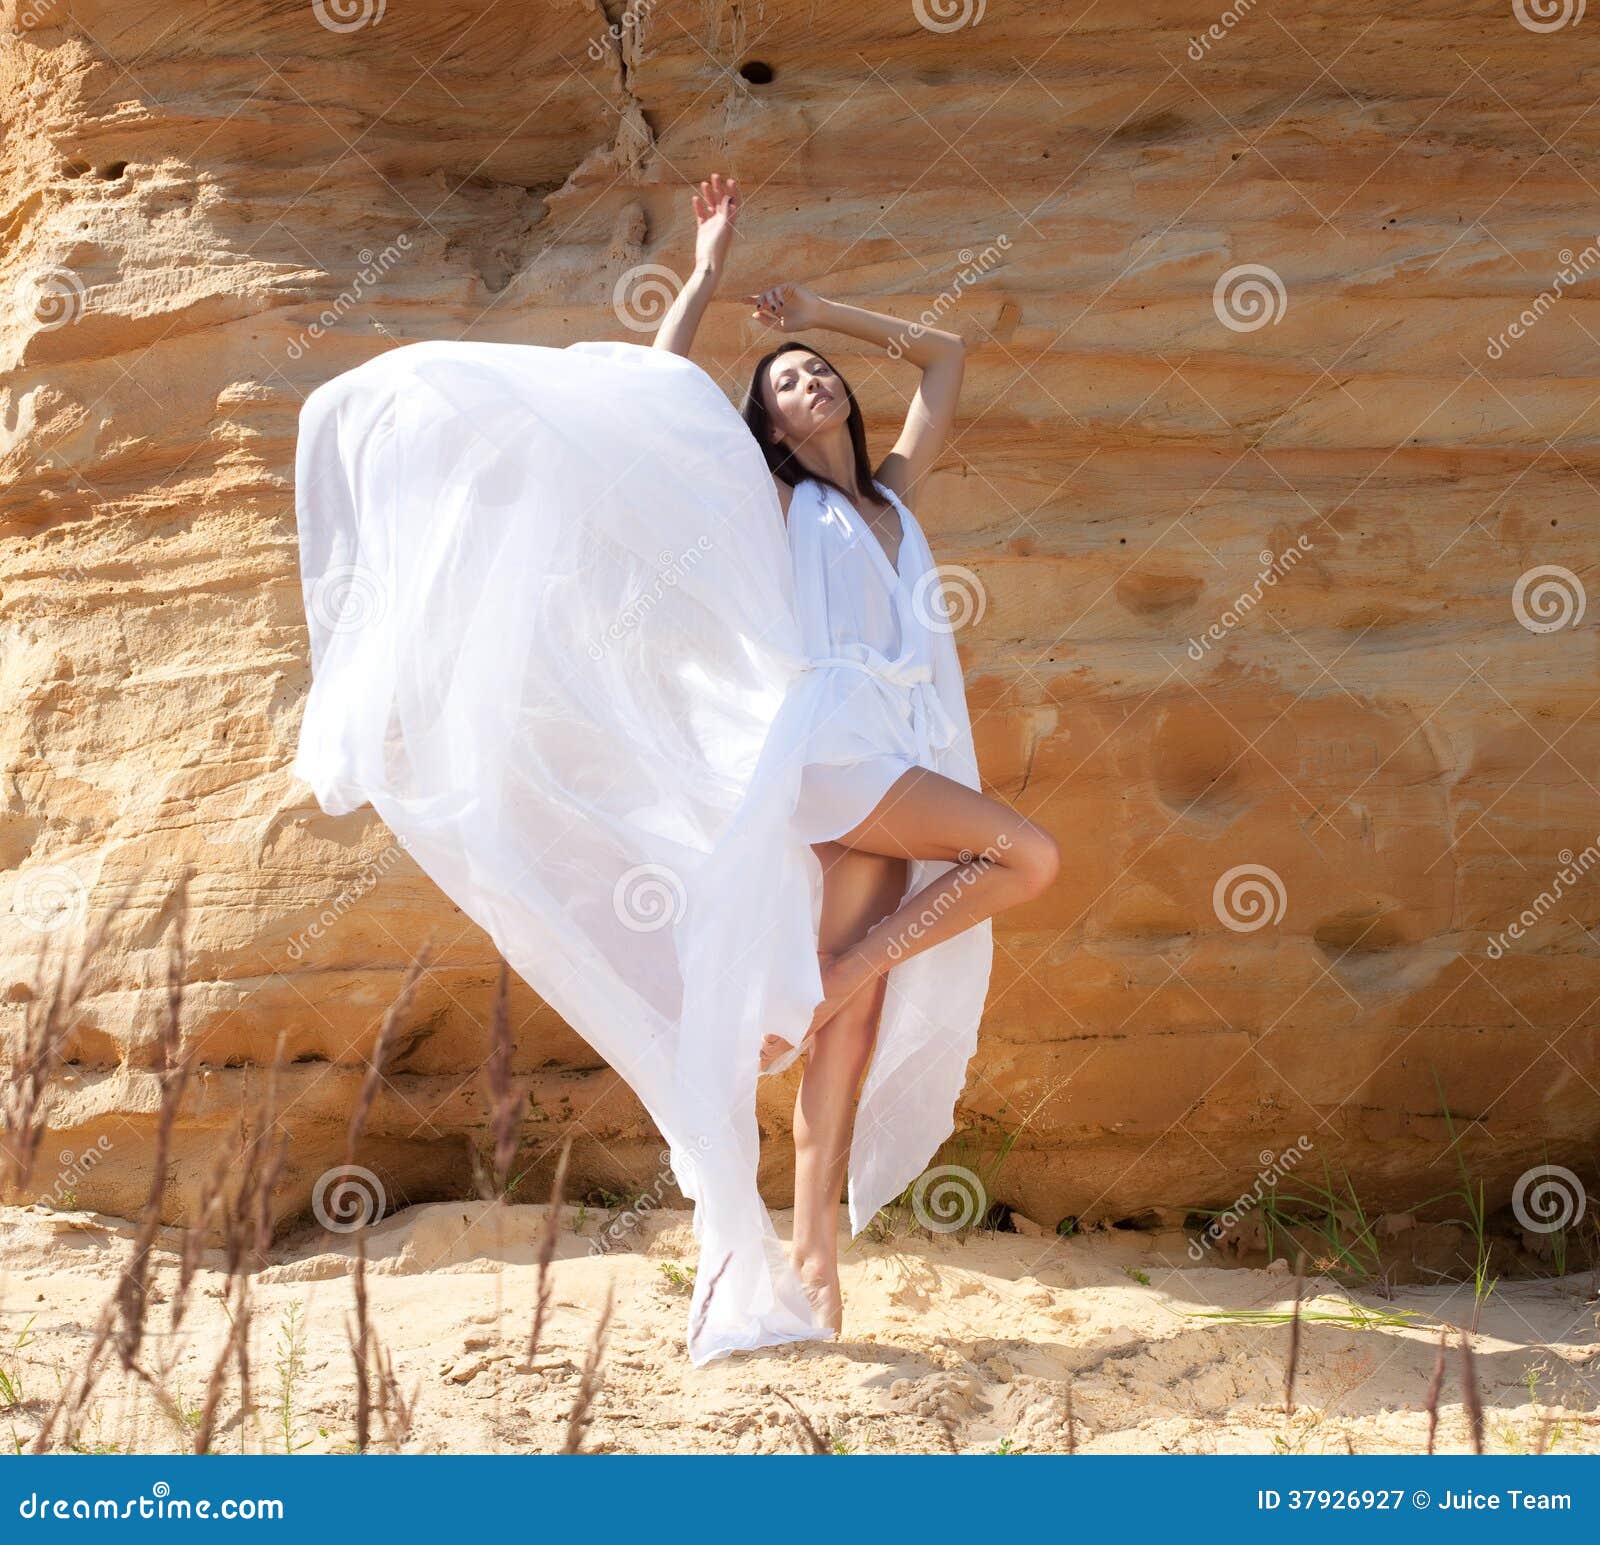 В белом платье так недолго танцевать мне. Фотосессия в пустыне белое платье. Девушка в белом платье в пустыне. Женщина в белом танцует. Девушка в белом платье танцует.